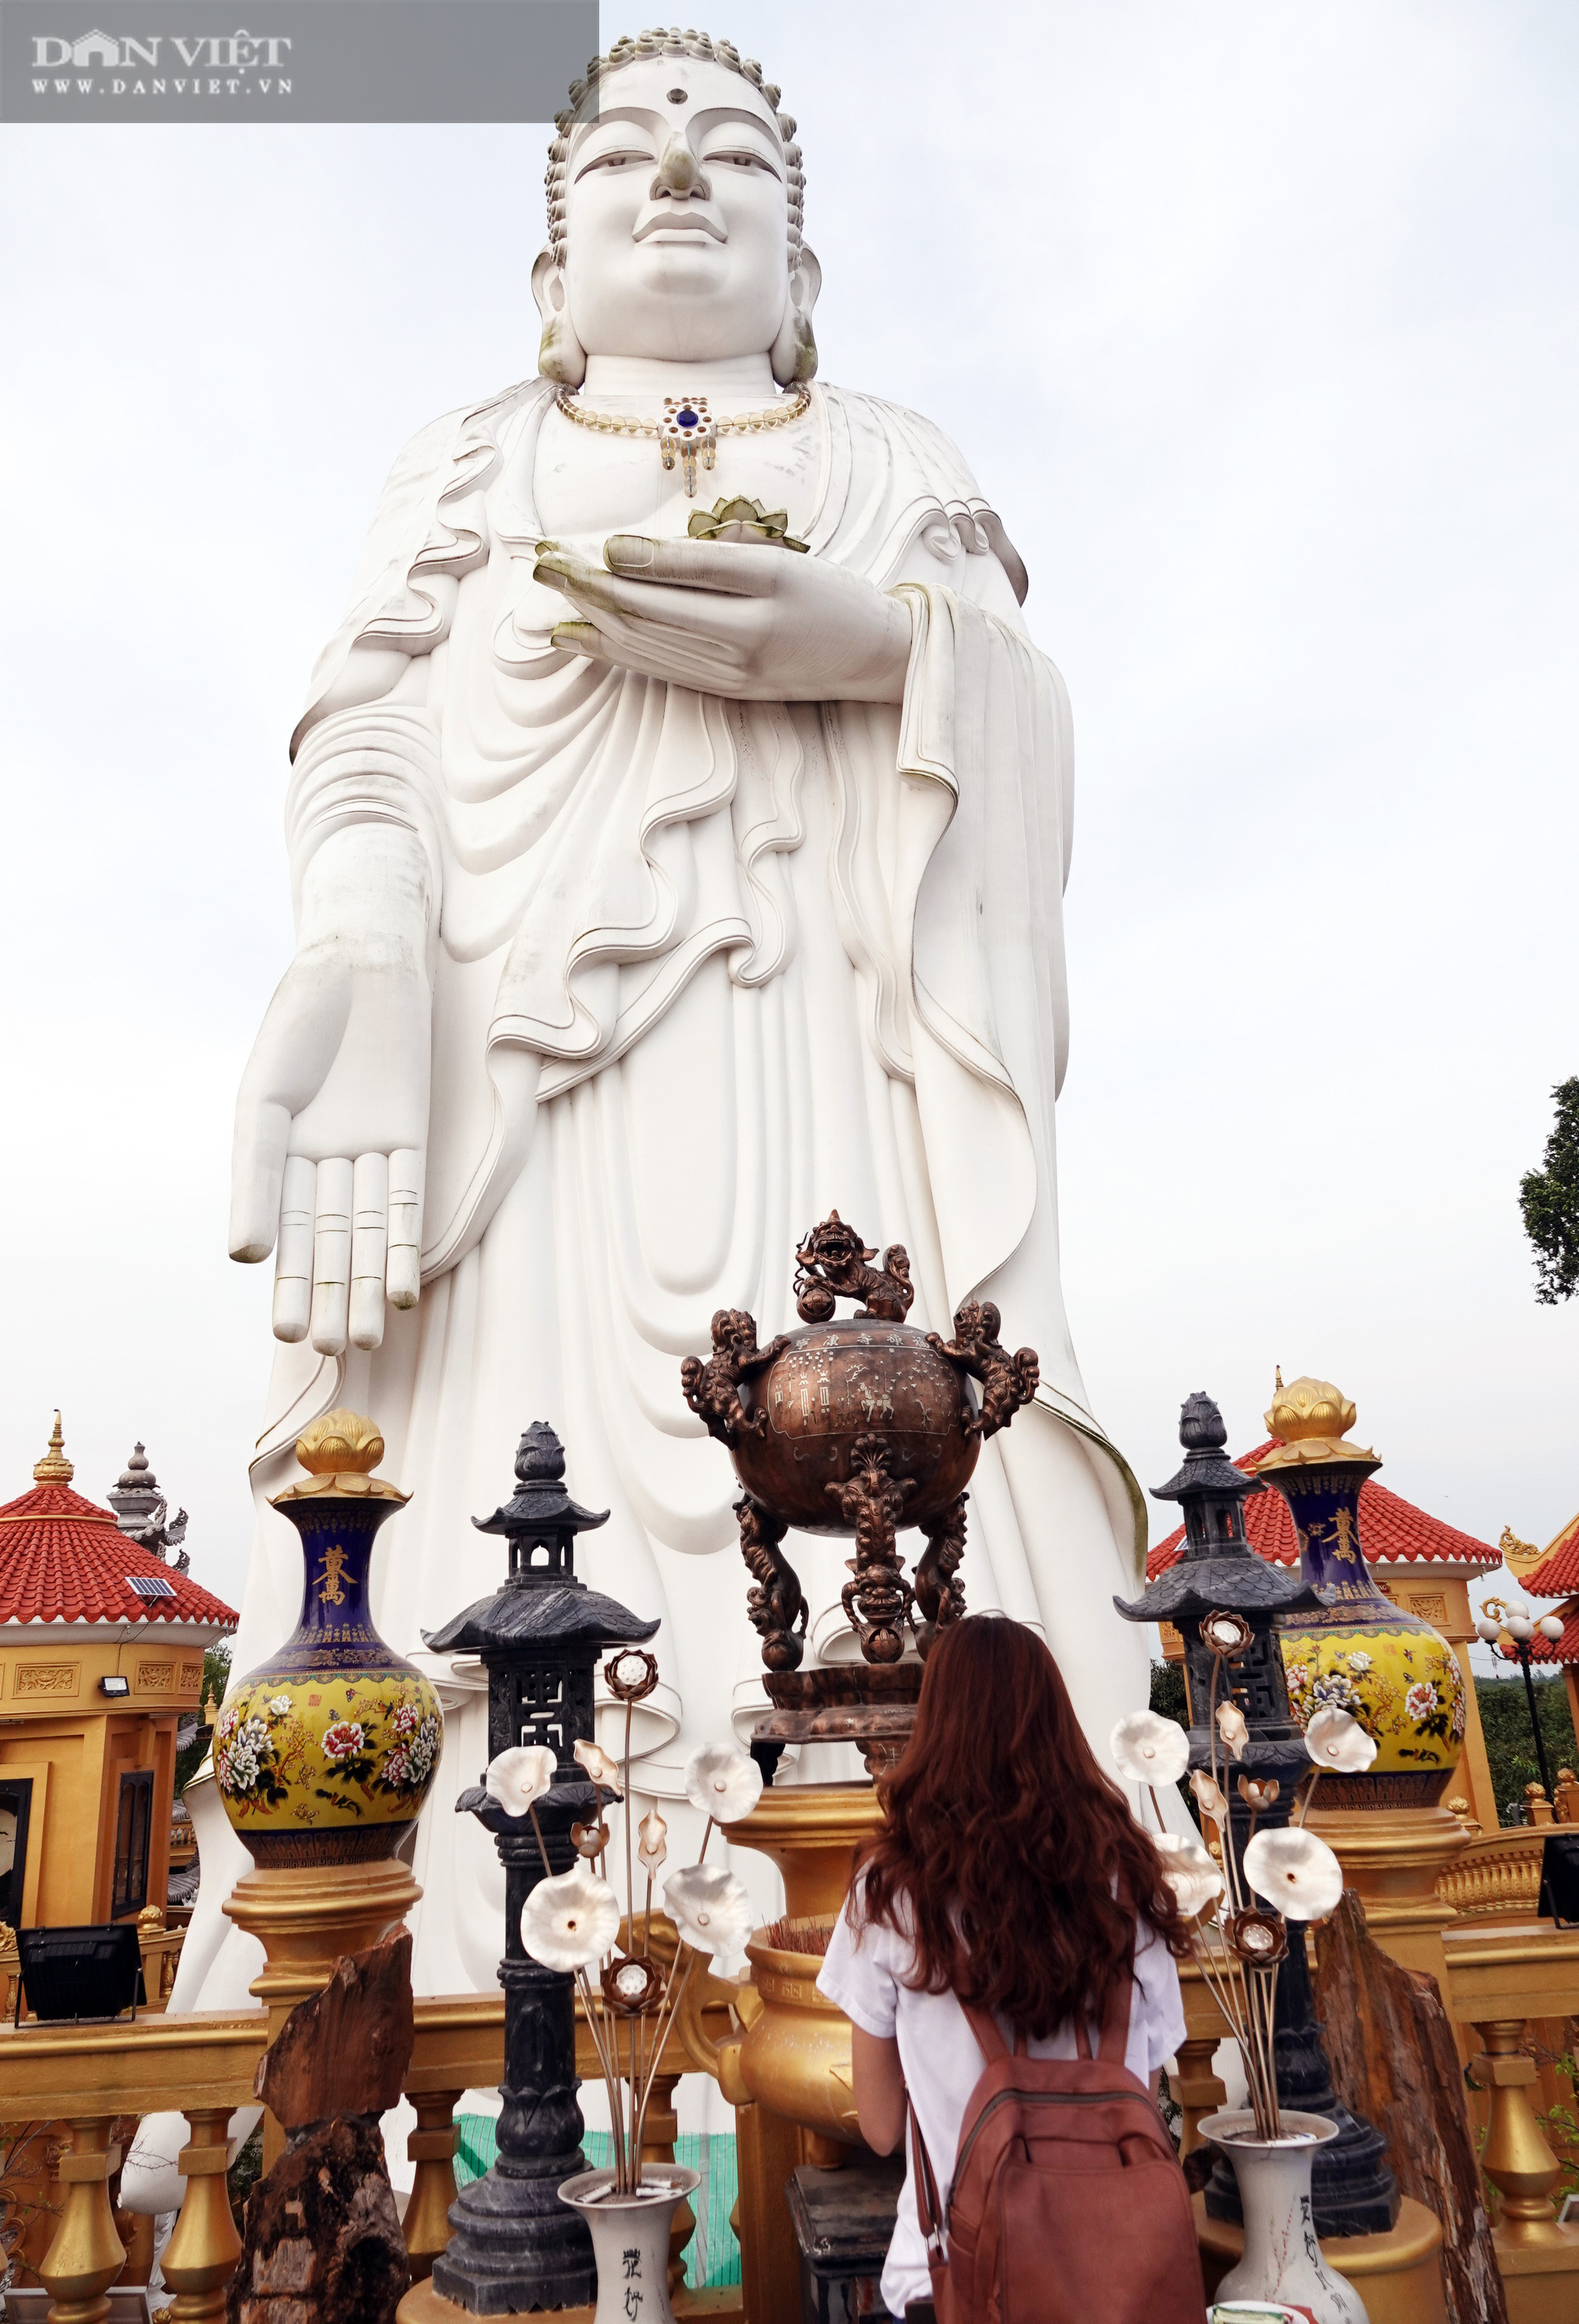 Ngôi chùa ở Cù Lao Giêng với quần thể tượng Phật đạt kỷ lục Việt Nam có gì đặc biệt? - Ảnh 7.